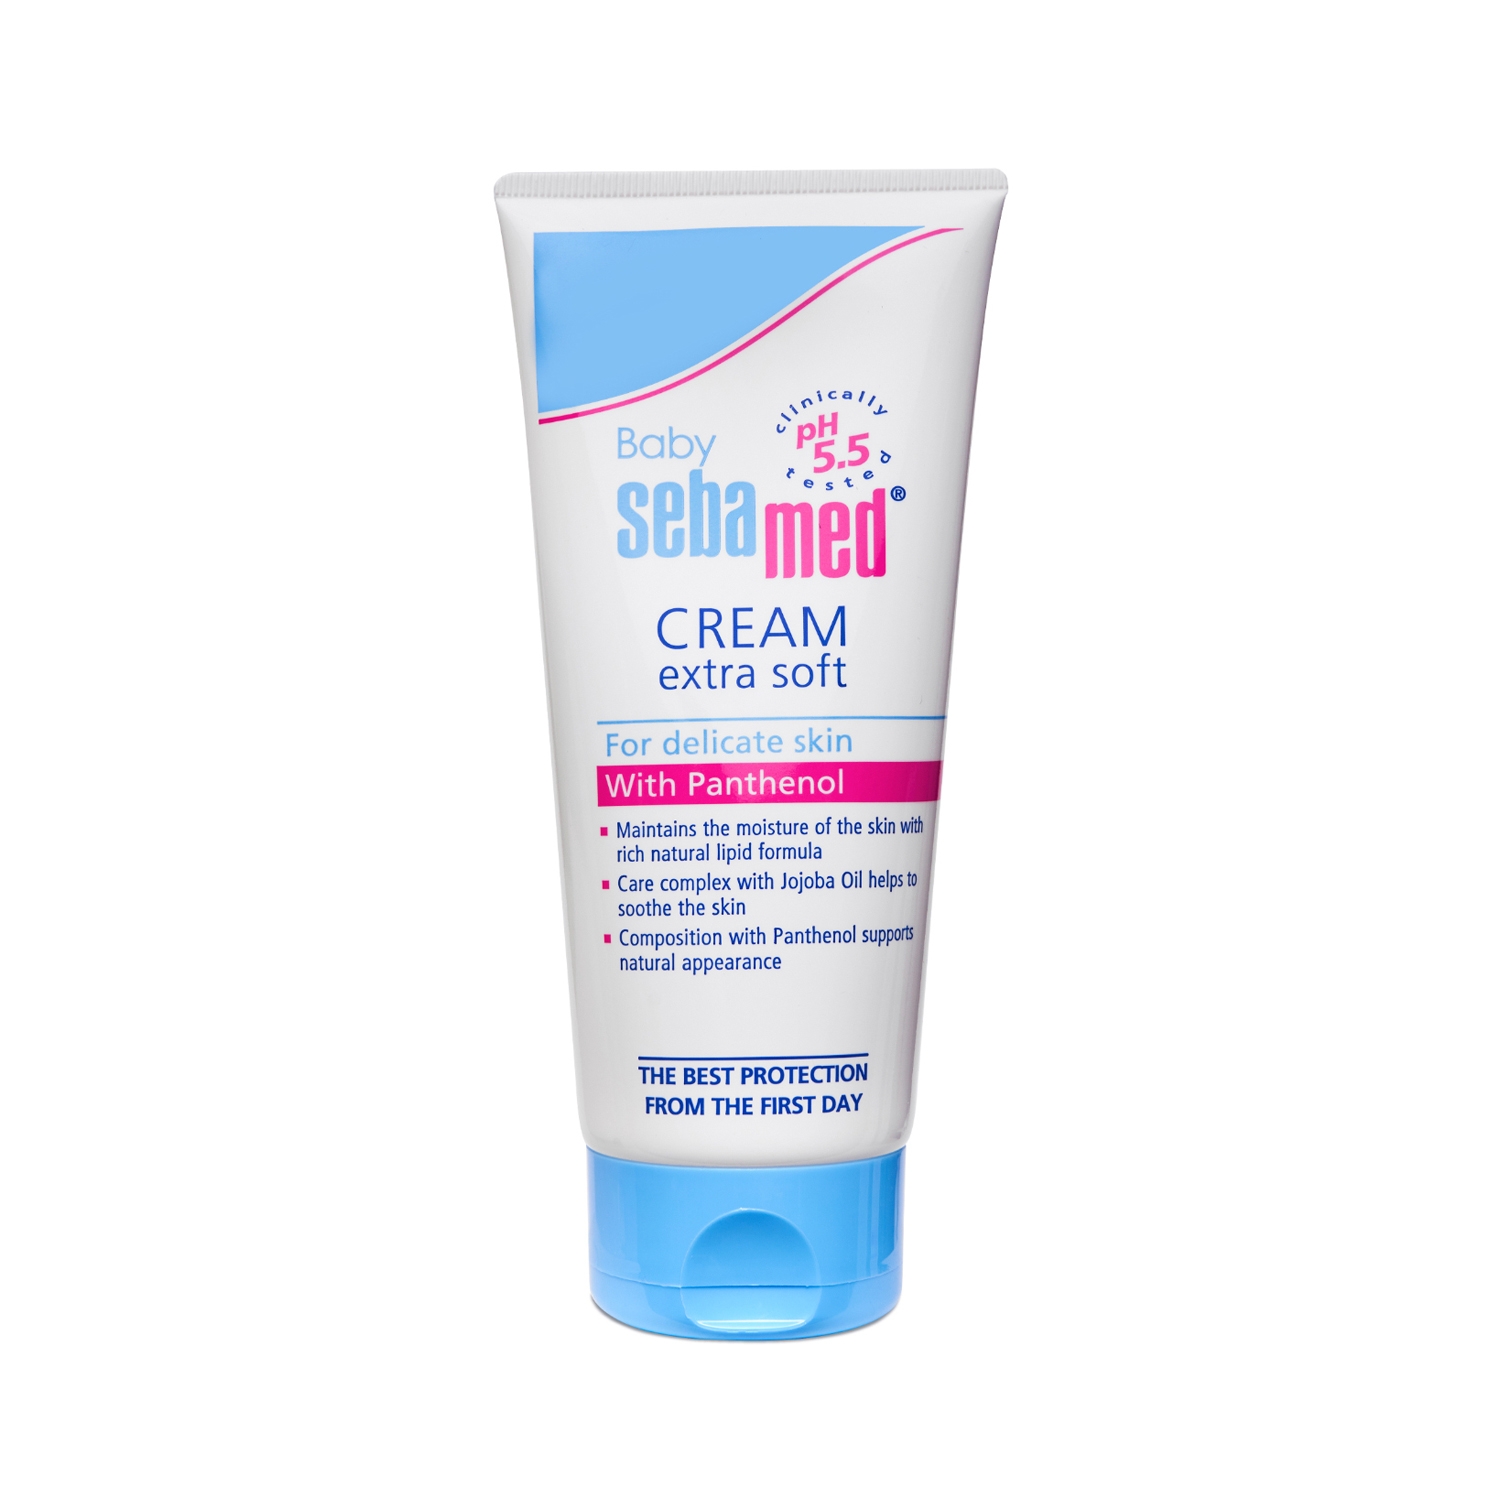 Sebamed | Sebamed Baby Cream Extra Soft (200ml)